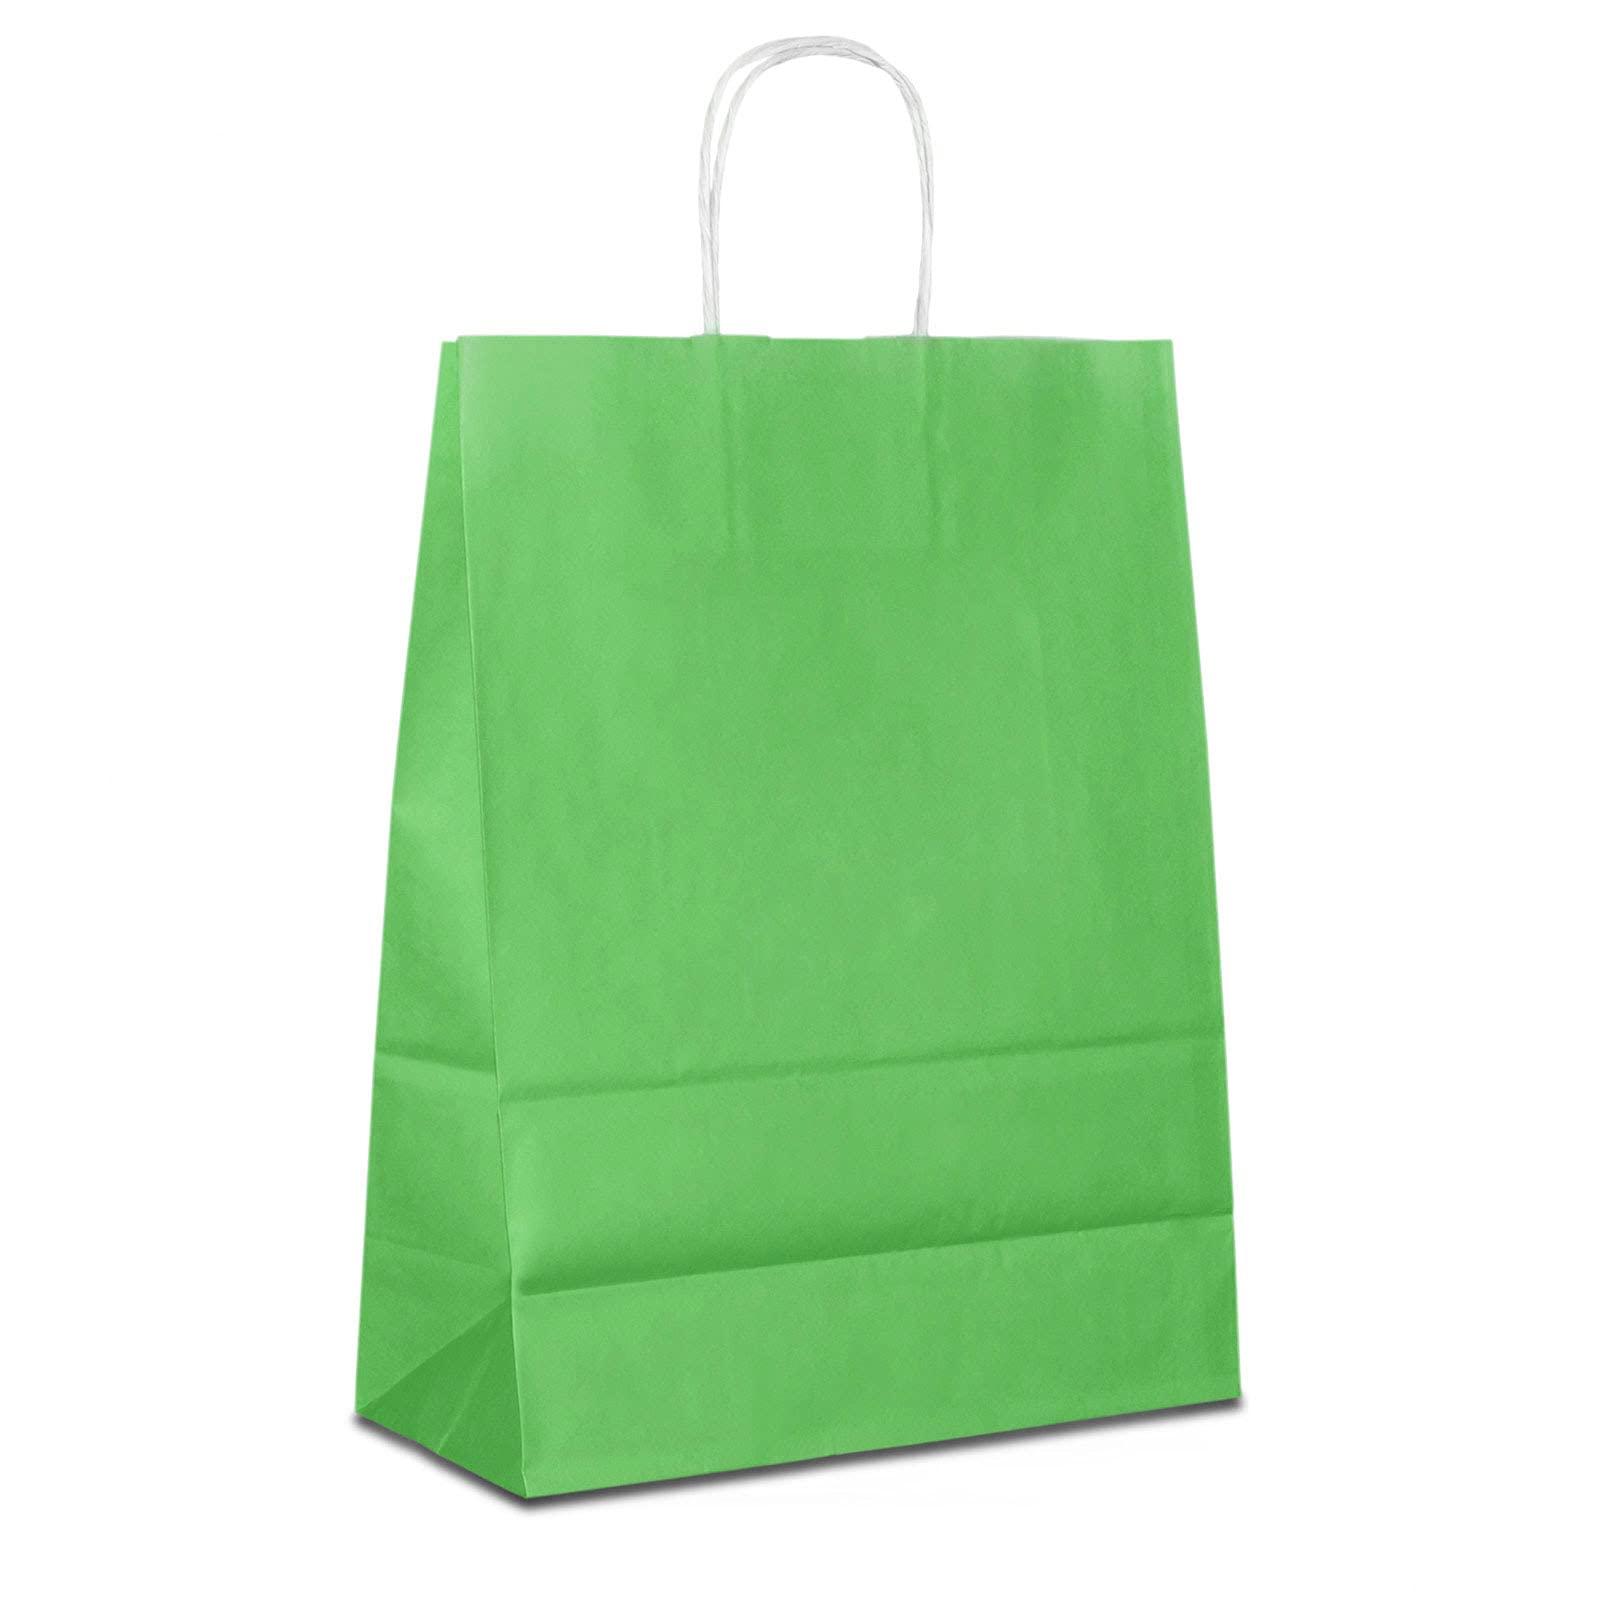 Papiertüten grün mit Kordel-Henkel I 600 Stk. 22+10x28cm I Papiertragetasche für Einzelhandel, Weihnachten, Mitbringsel, TO-GO I Geschenktüten aus Kraftpapier I HUTNER